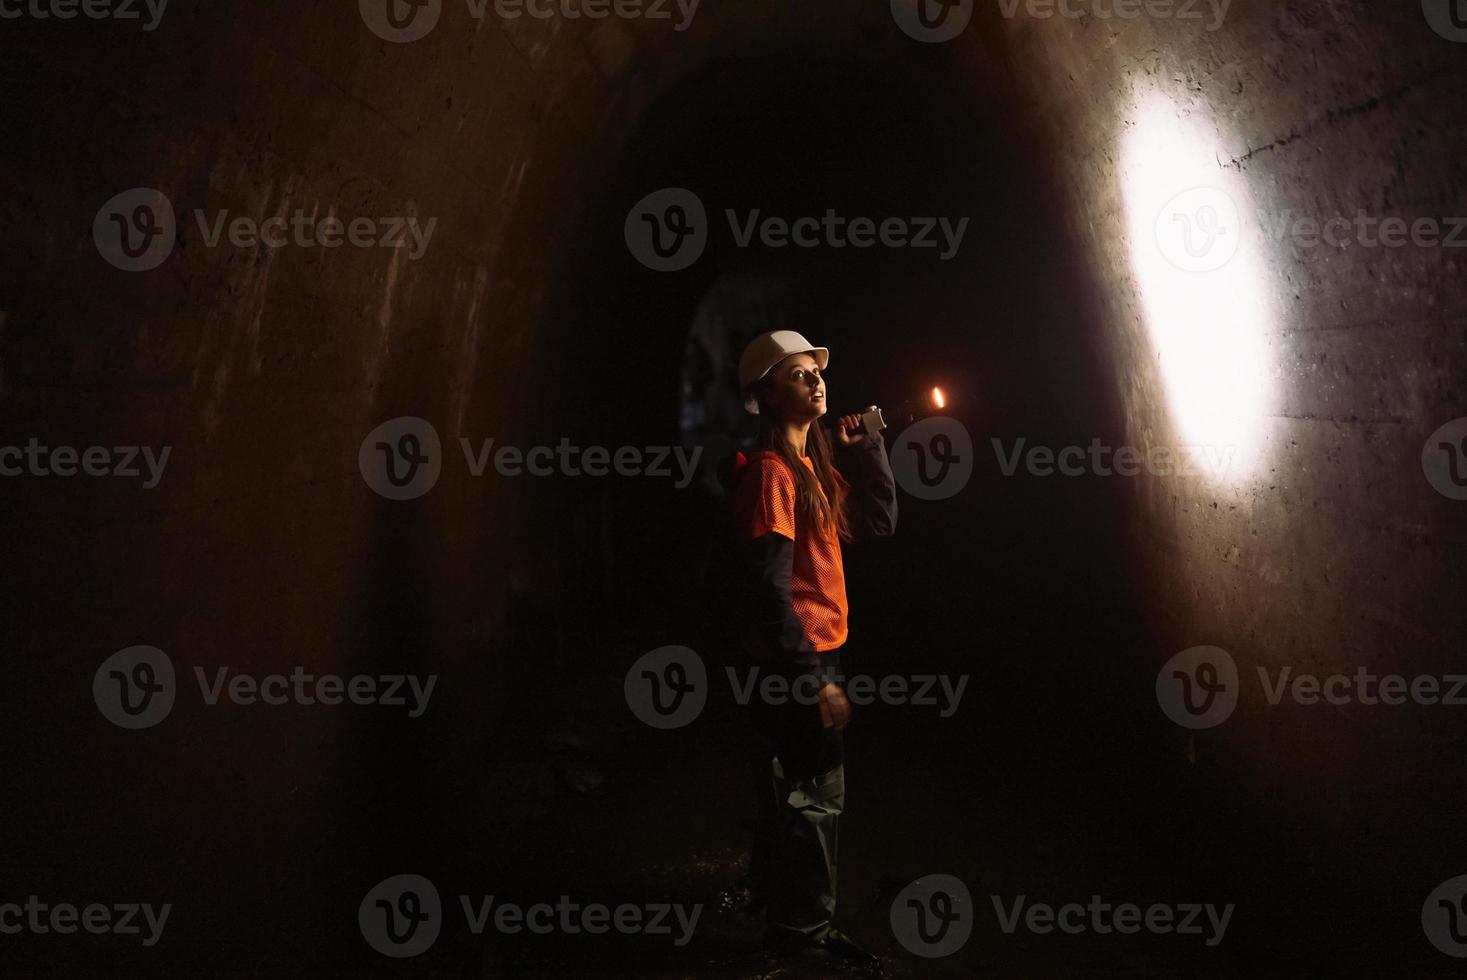 mujer excavadora con linterna explora el túnel foto